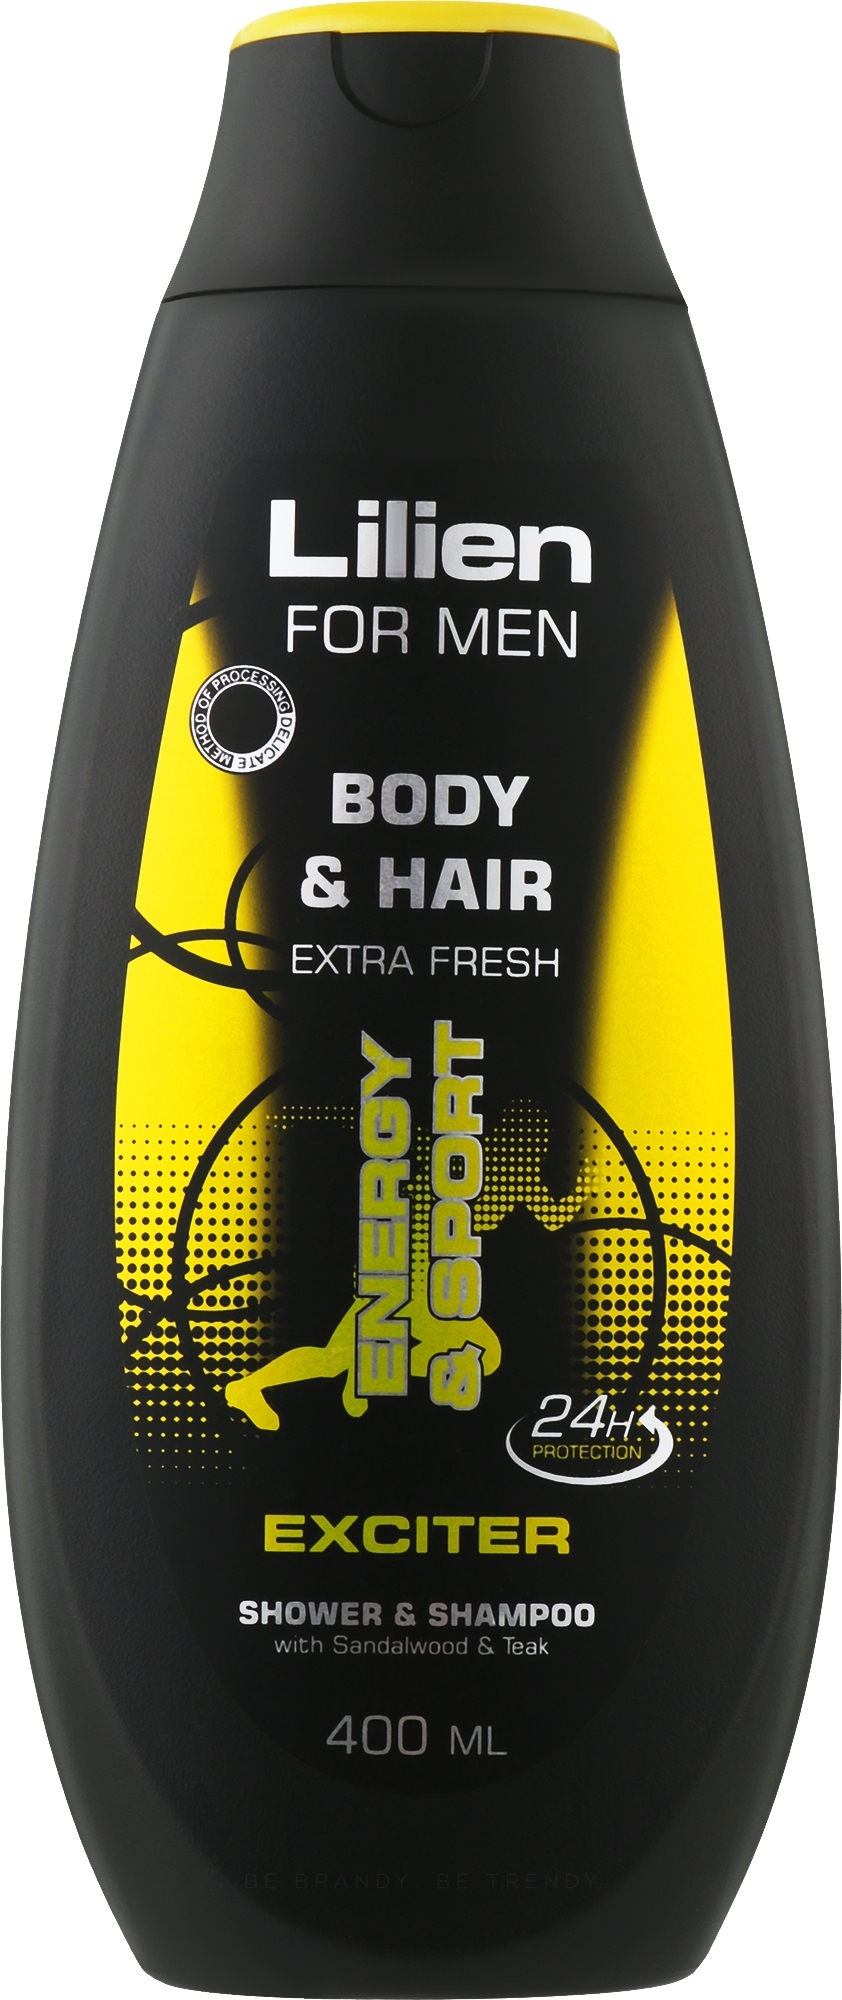 2in1 Shampoo-Duschgel für Männer Exciter - Lilien For Men Body & Hair Exciter Shower & Shampoo — Bild 400 ml